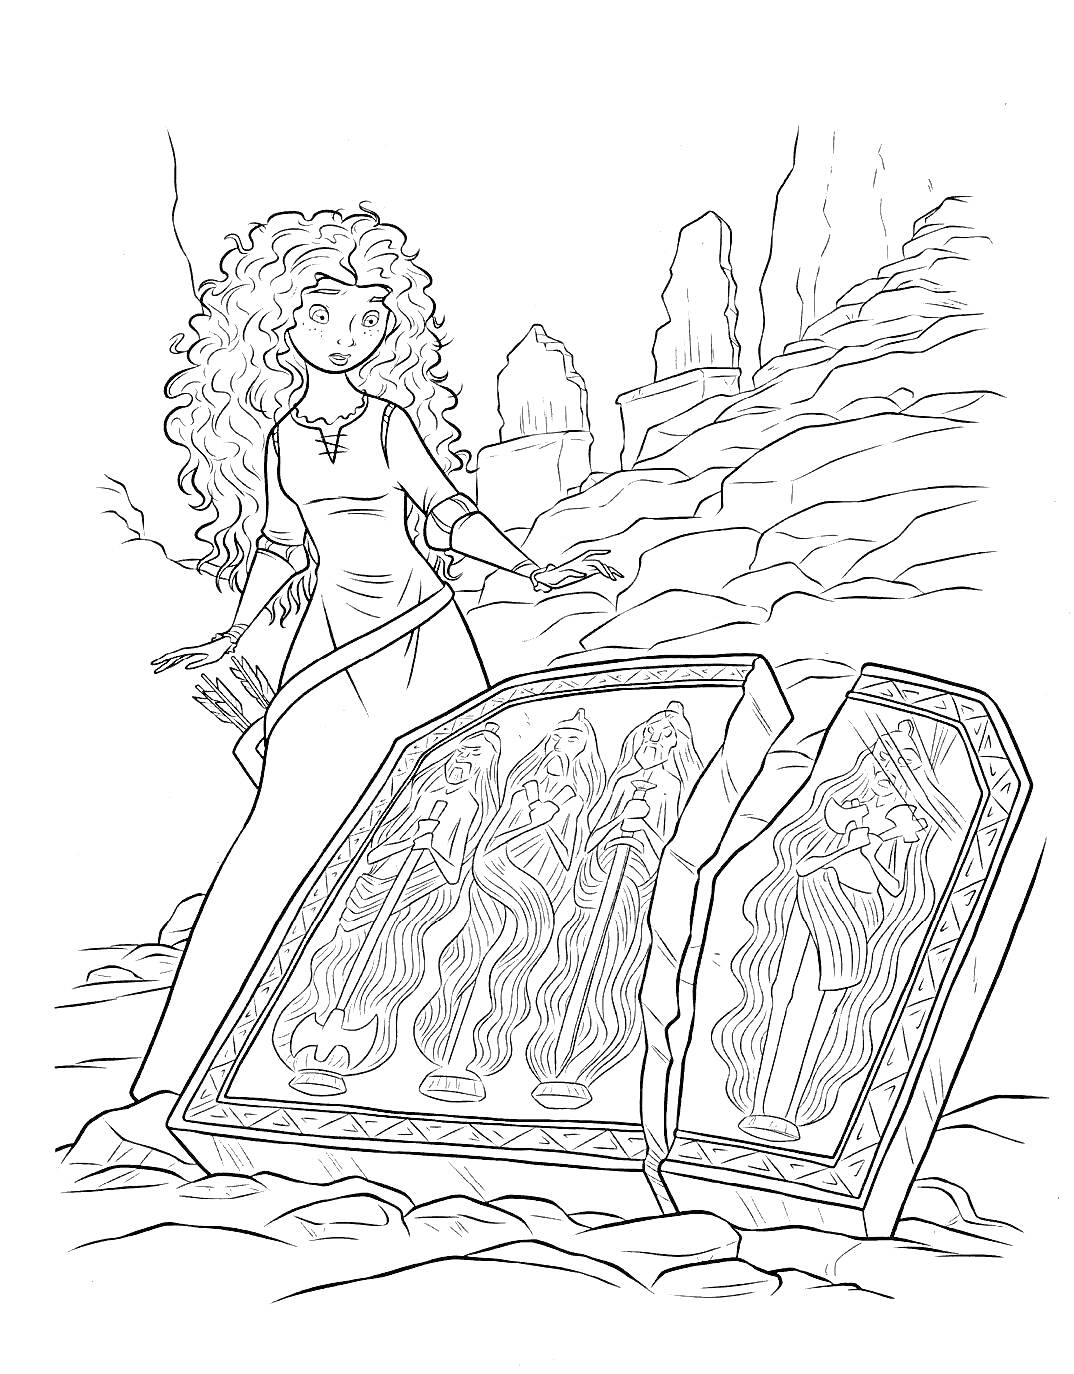 Девушка с длинными вьющимися волосами перед сломанной каменной плитой с изображением трёх фигур